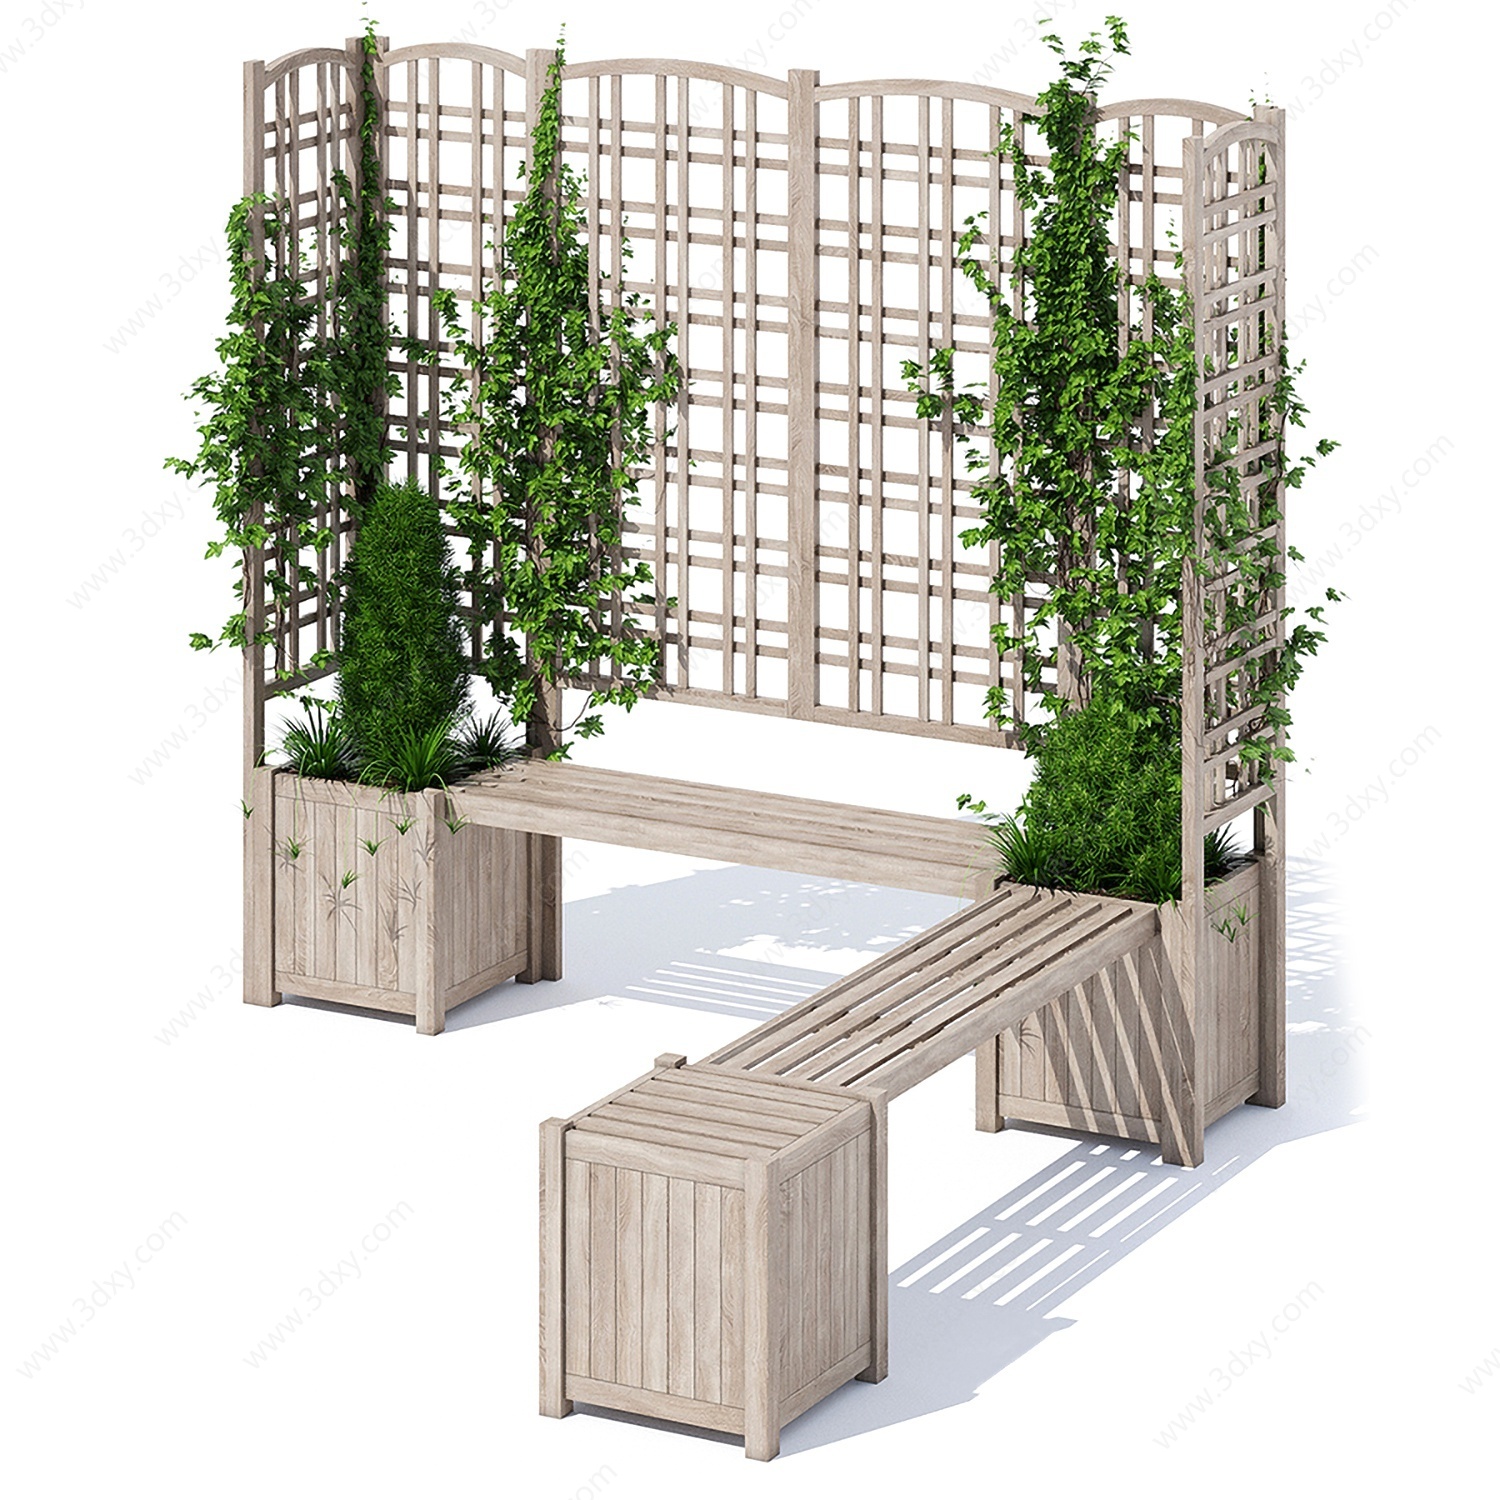 户外长凳爬山虎植物墙3D模型